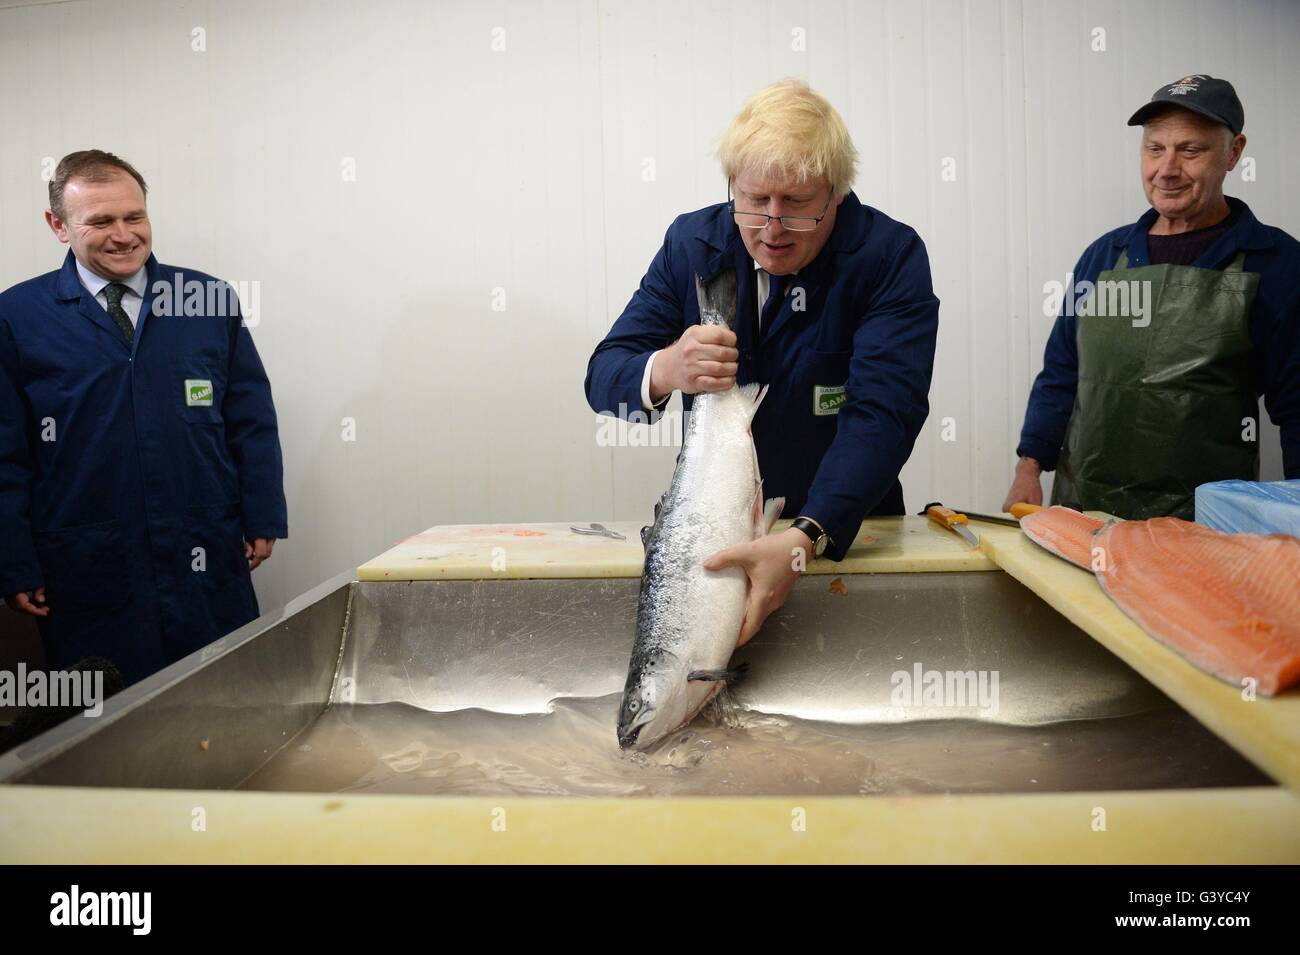 Boris Johnson MP chat con basilico Burgess (destra), mentre il settore agricolo il ministro George Eustice (sinistra) guarda come egli visite Sam Cole alimenti la lavorazione del pesce in fabbrica a Lowestoft, Suffolk, dove egli era la campagna a favore del voto lasciare la campagna dell'UE. Foto Stock